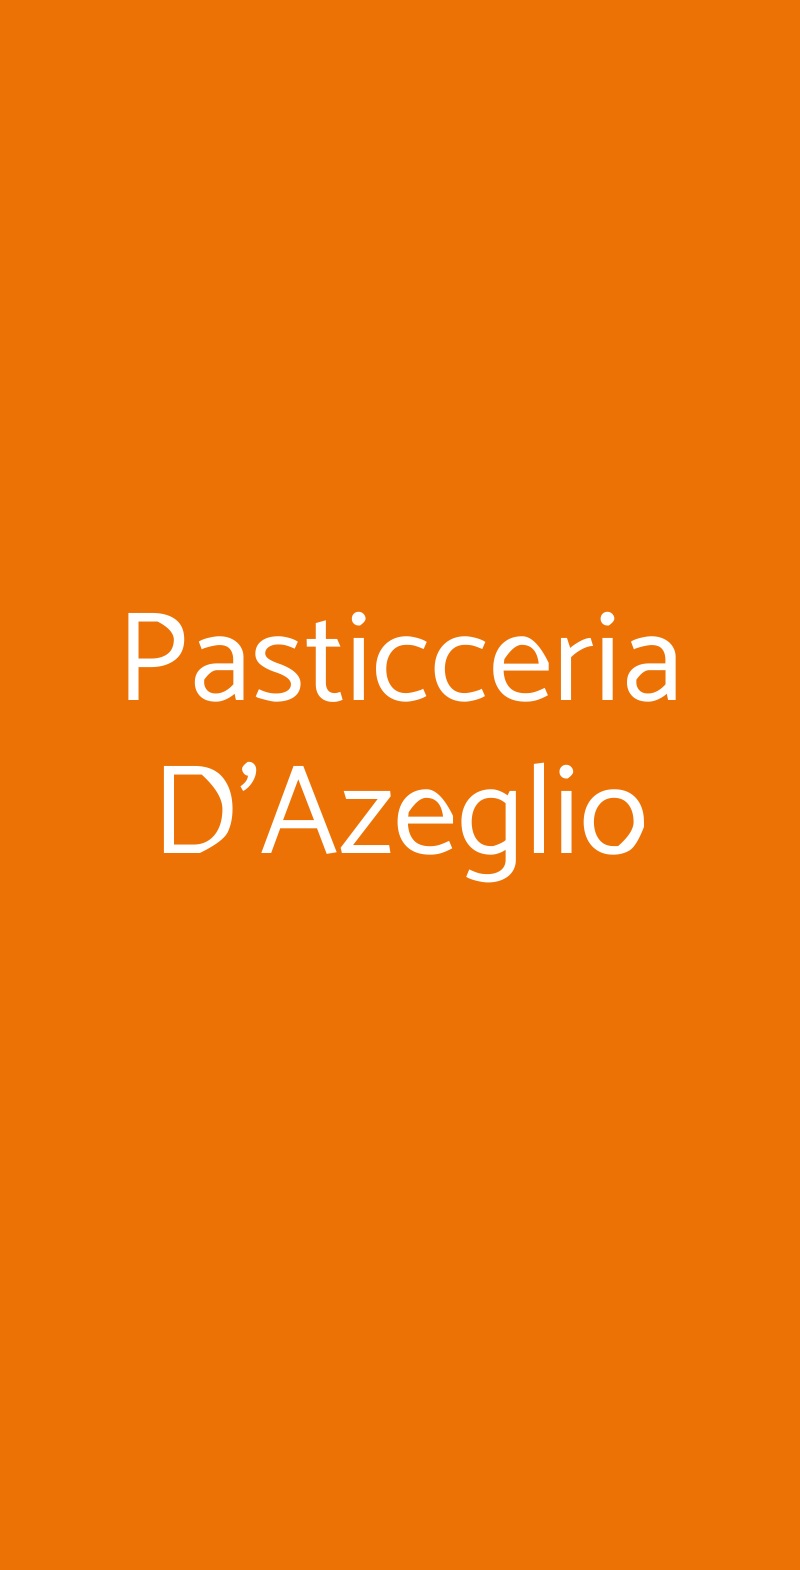 Pasticceria D'Azeglio Bologna menù 1 pagina